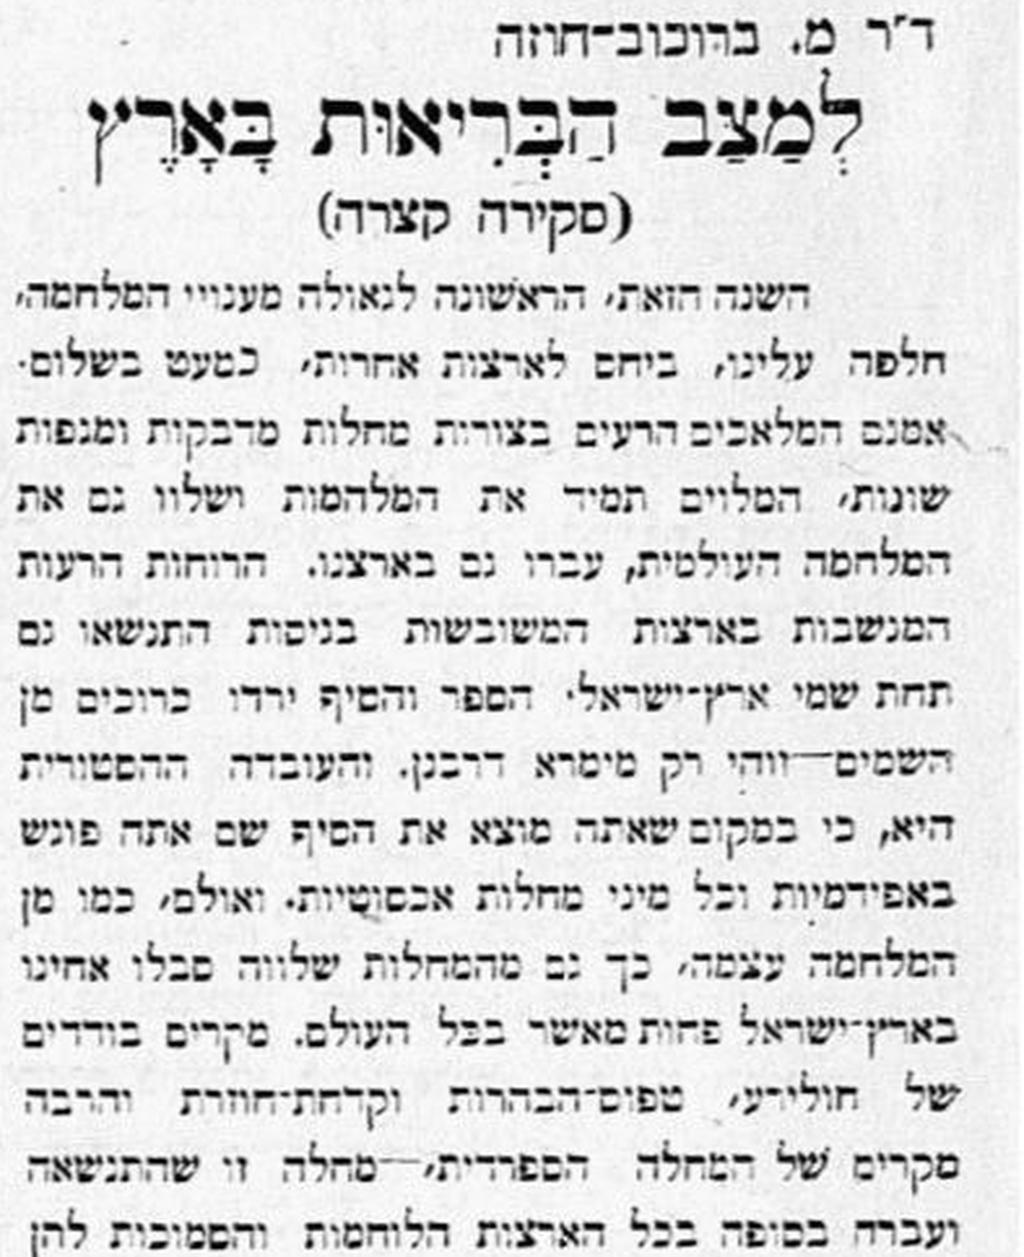  Статья д-ра Борохова о состоянии здоровья населения в 1919 году. Из архива Национальной библиотеки Израиля